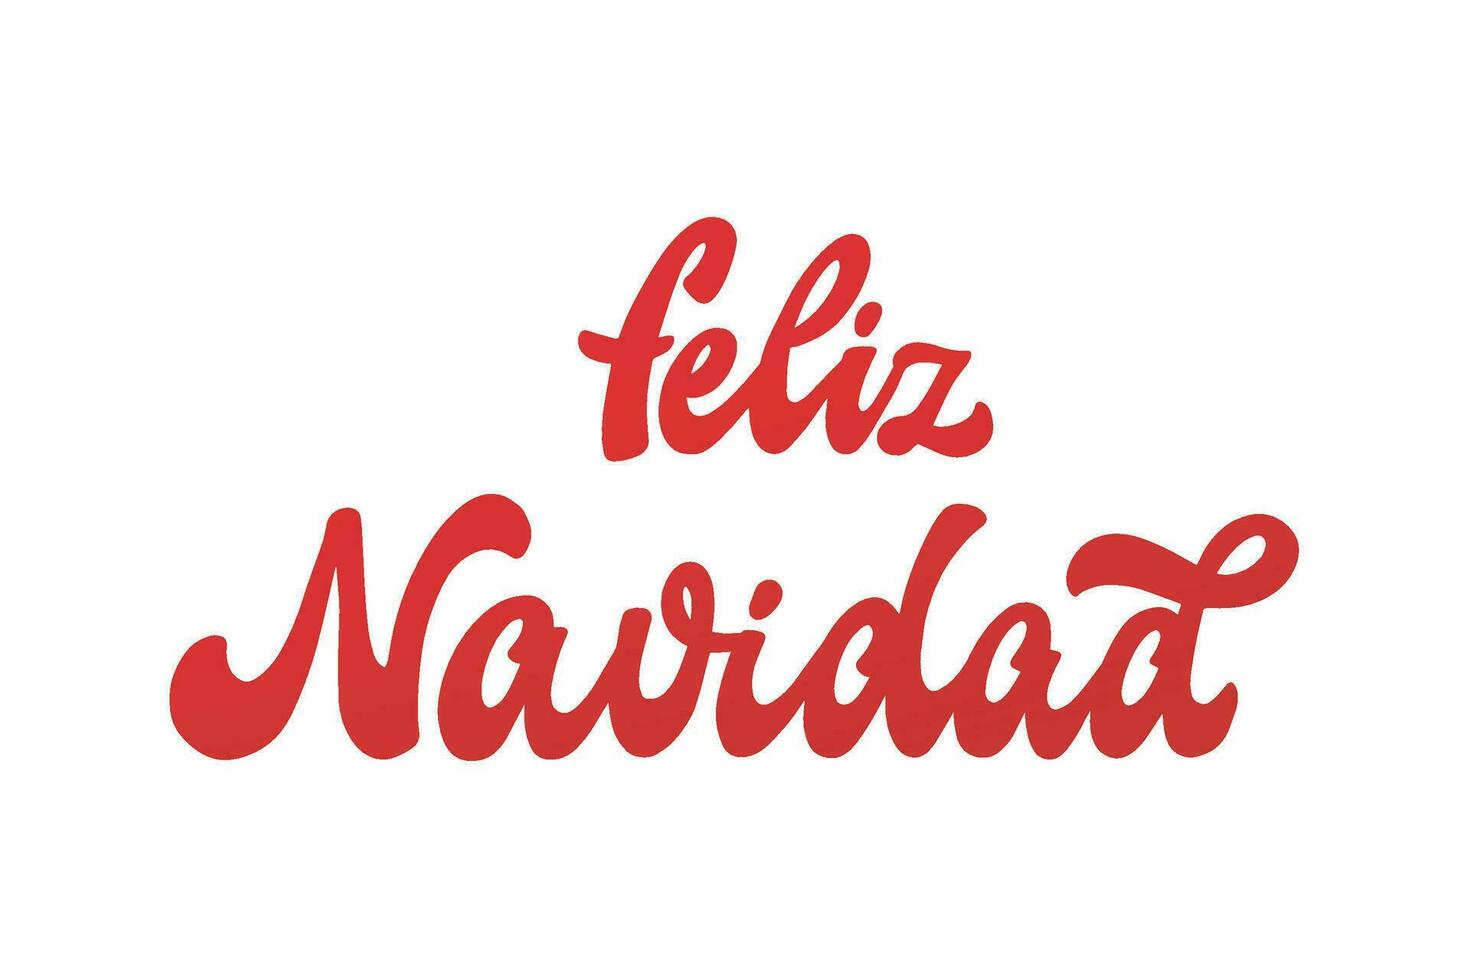 feliz navidad hand- belettering citaat in Spaans - vertaling vrolijk kerstmis. mooi zo voor affiches, afdrukken, kaarten, tekens, spandoeken, uitnodigingen, stickers, sublimatie, enz. eps 10 vector